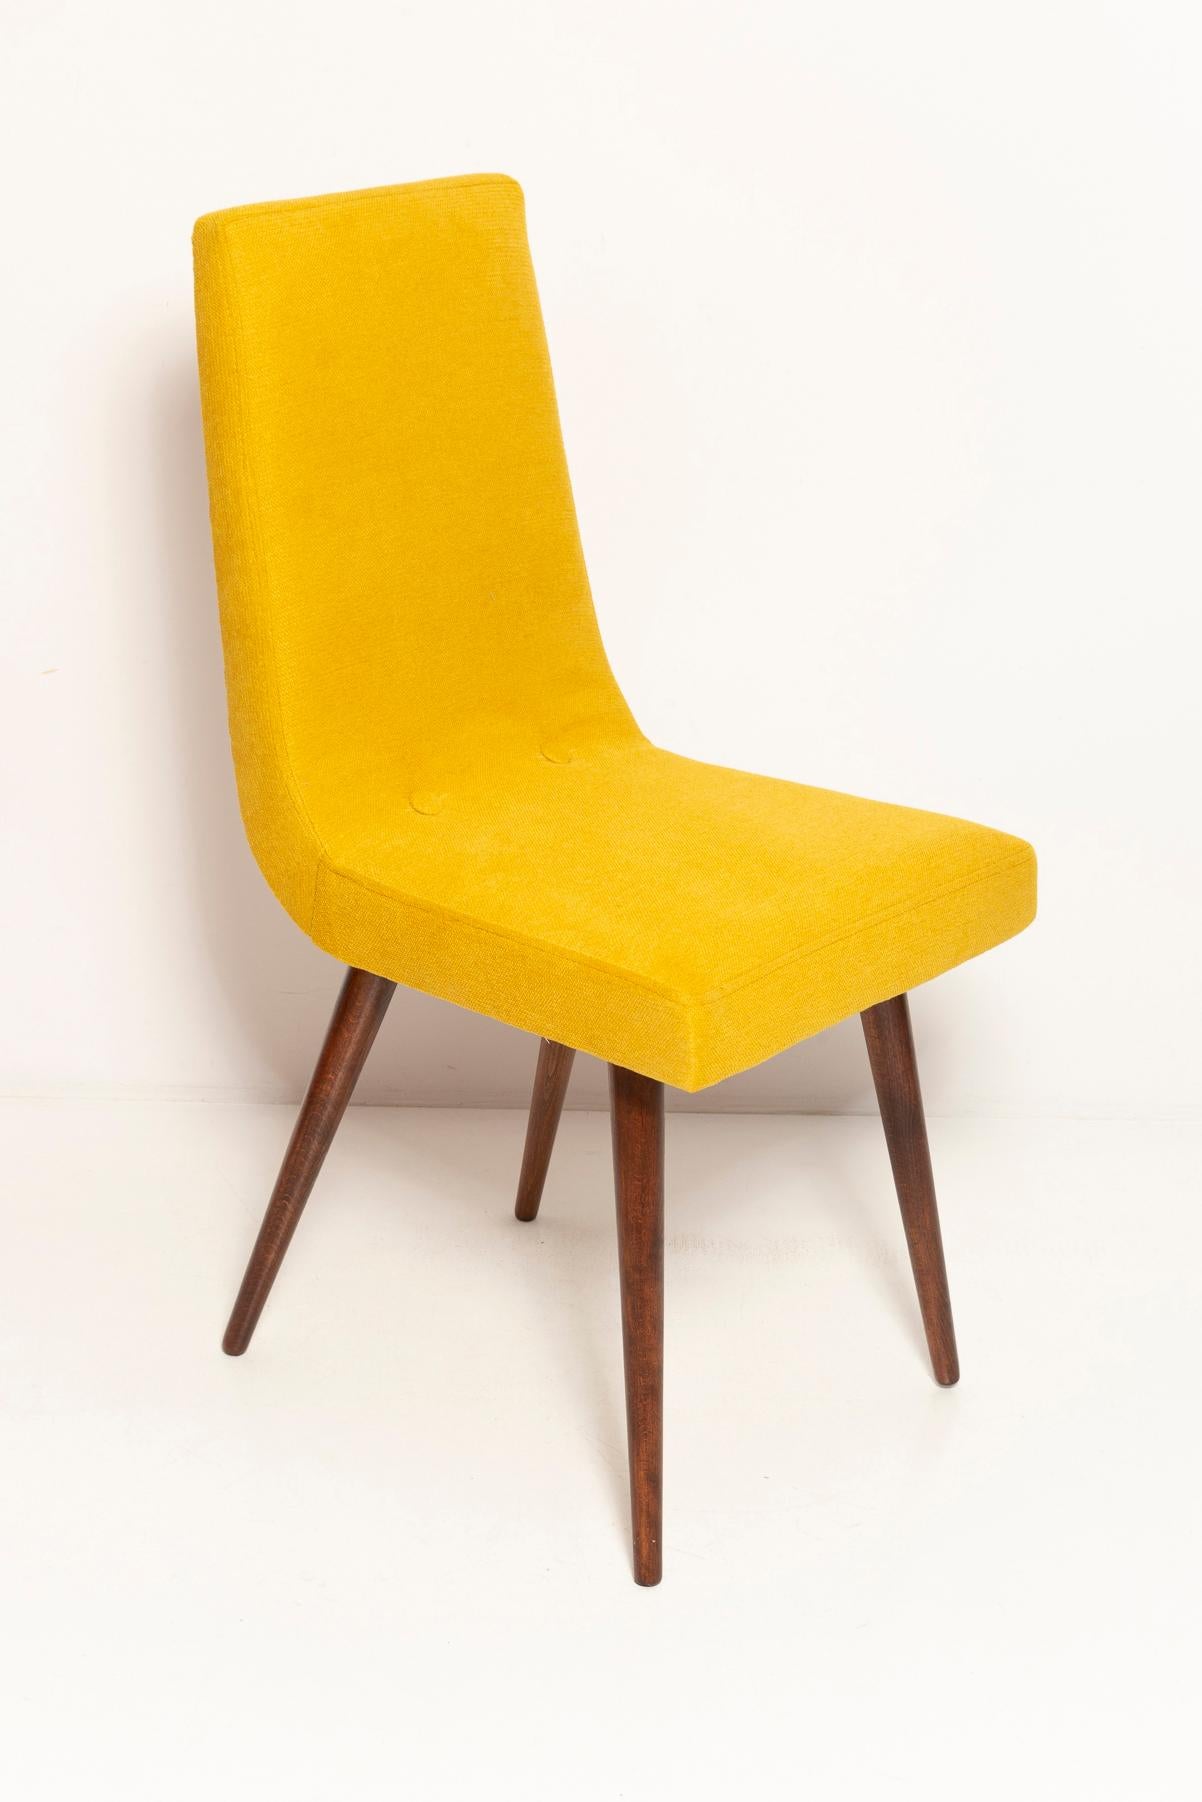 Set of Ten Midcentury Mustard Yellow Wool Chairs, Rajmund Halas Europe, 1960s For Sale 1